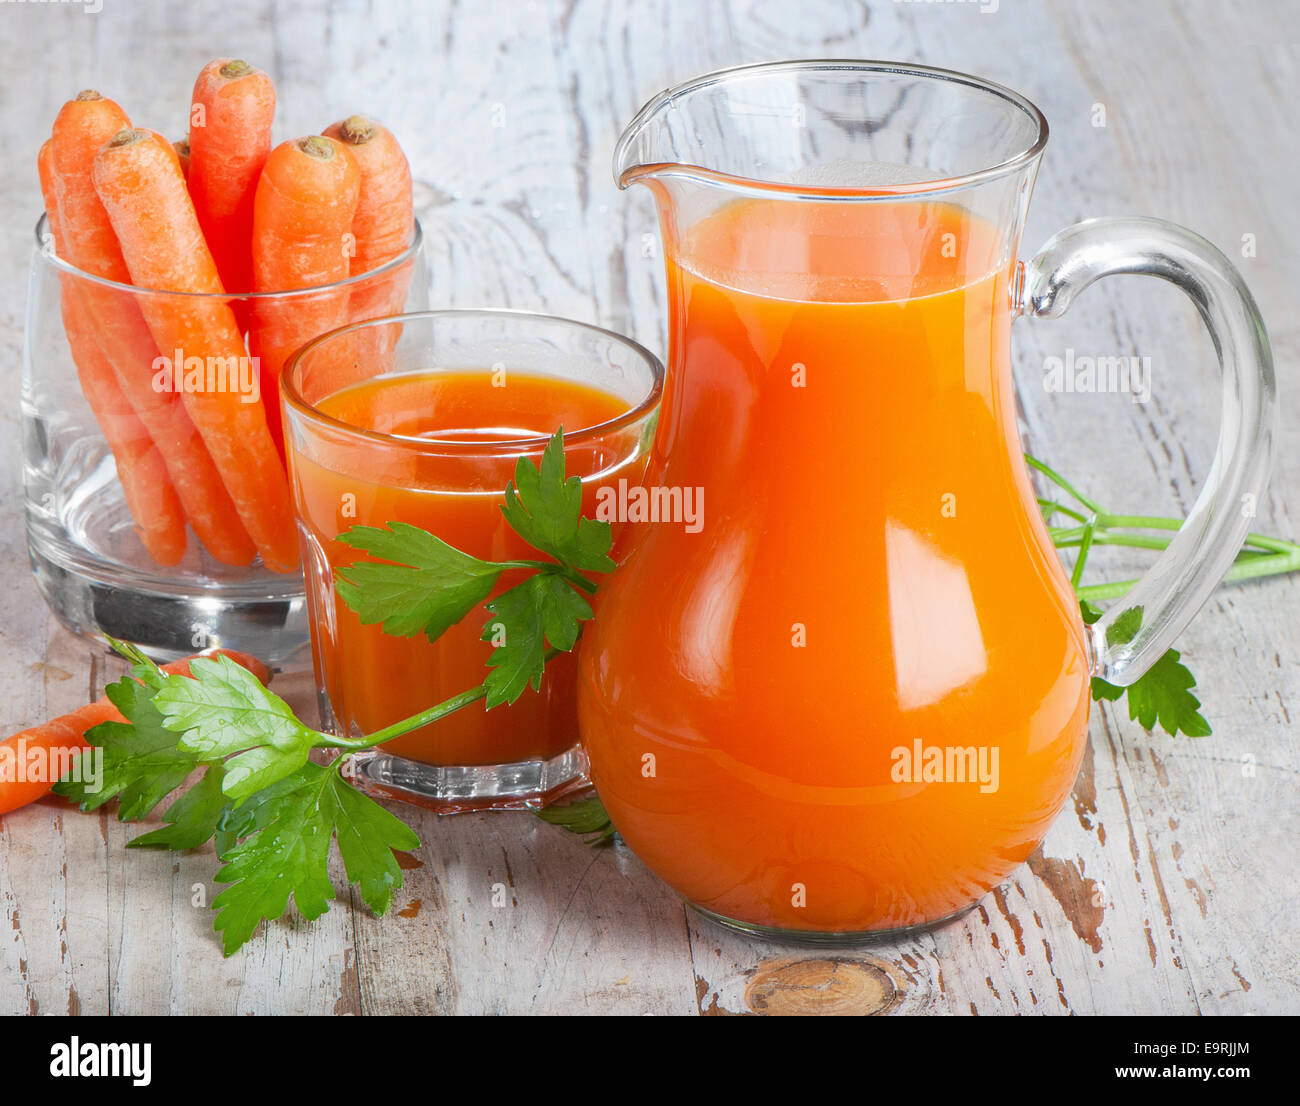 Des aliments sains - jus de carottes et carottes Banque D'Images